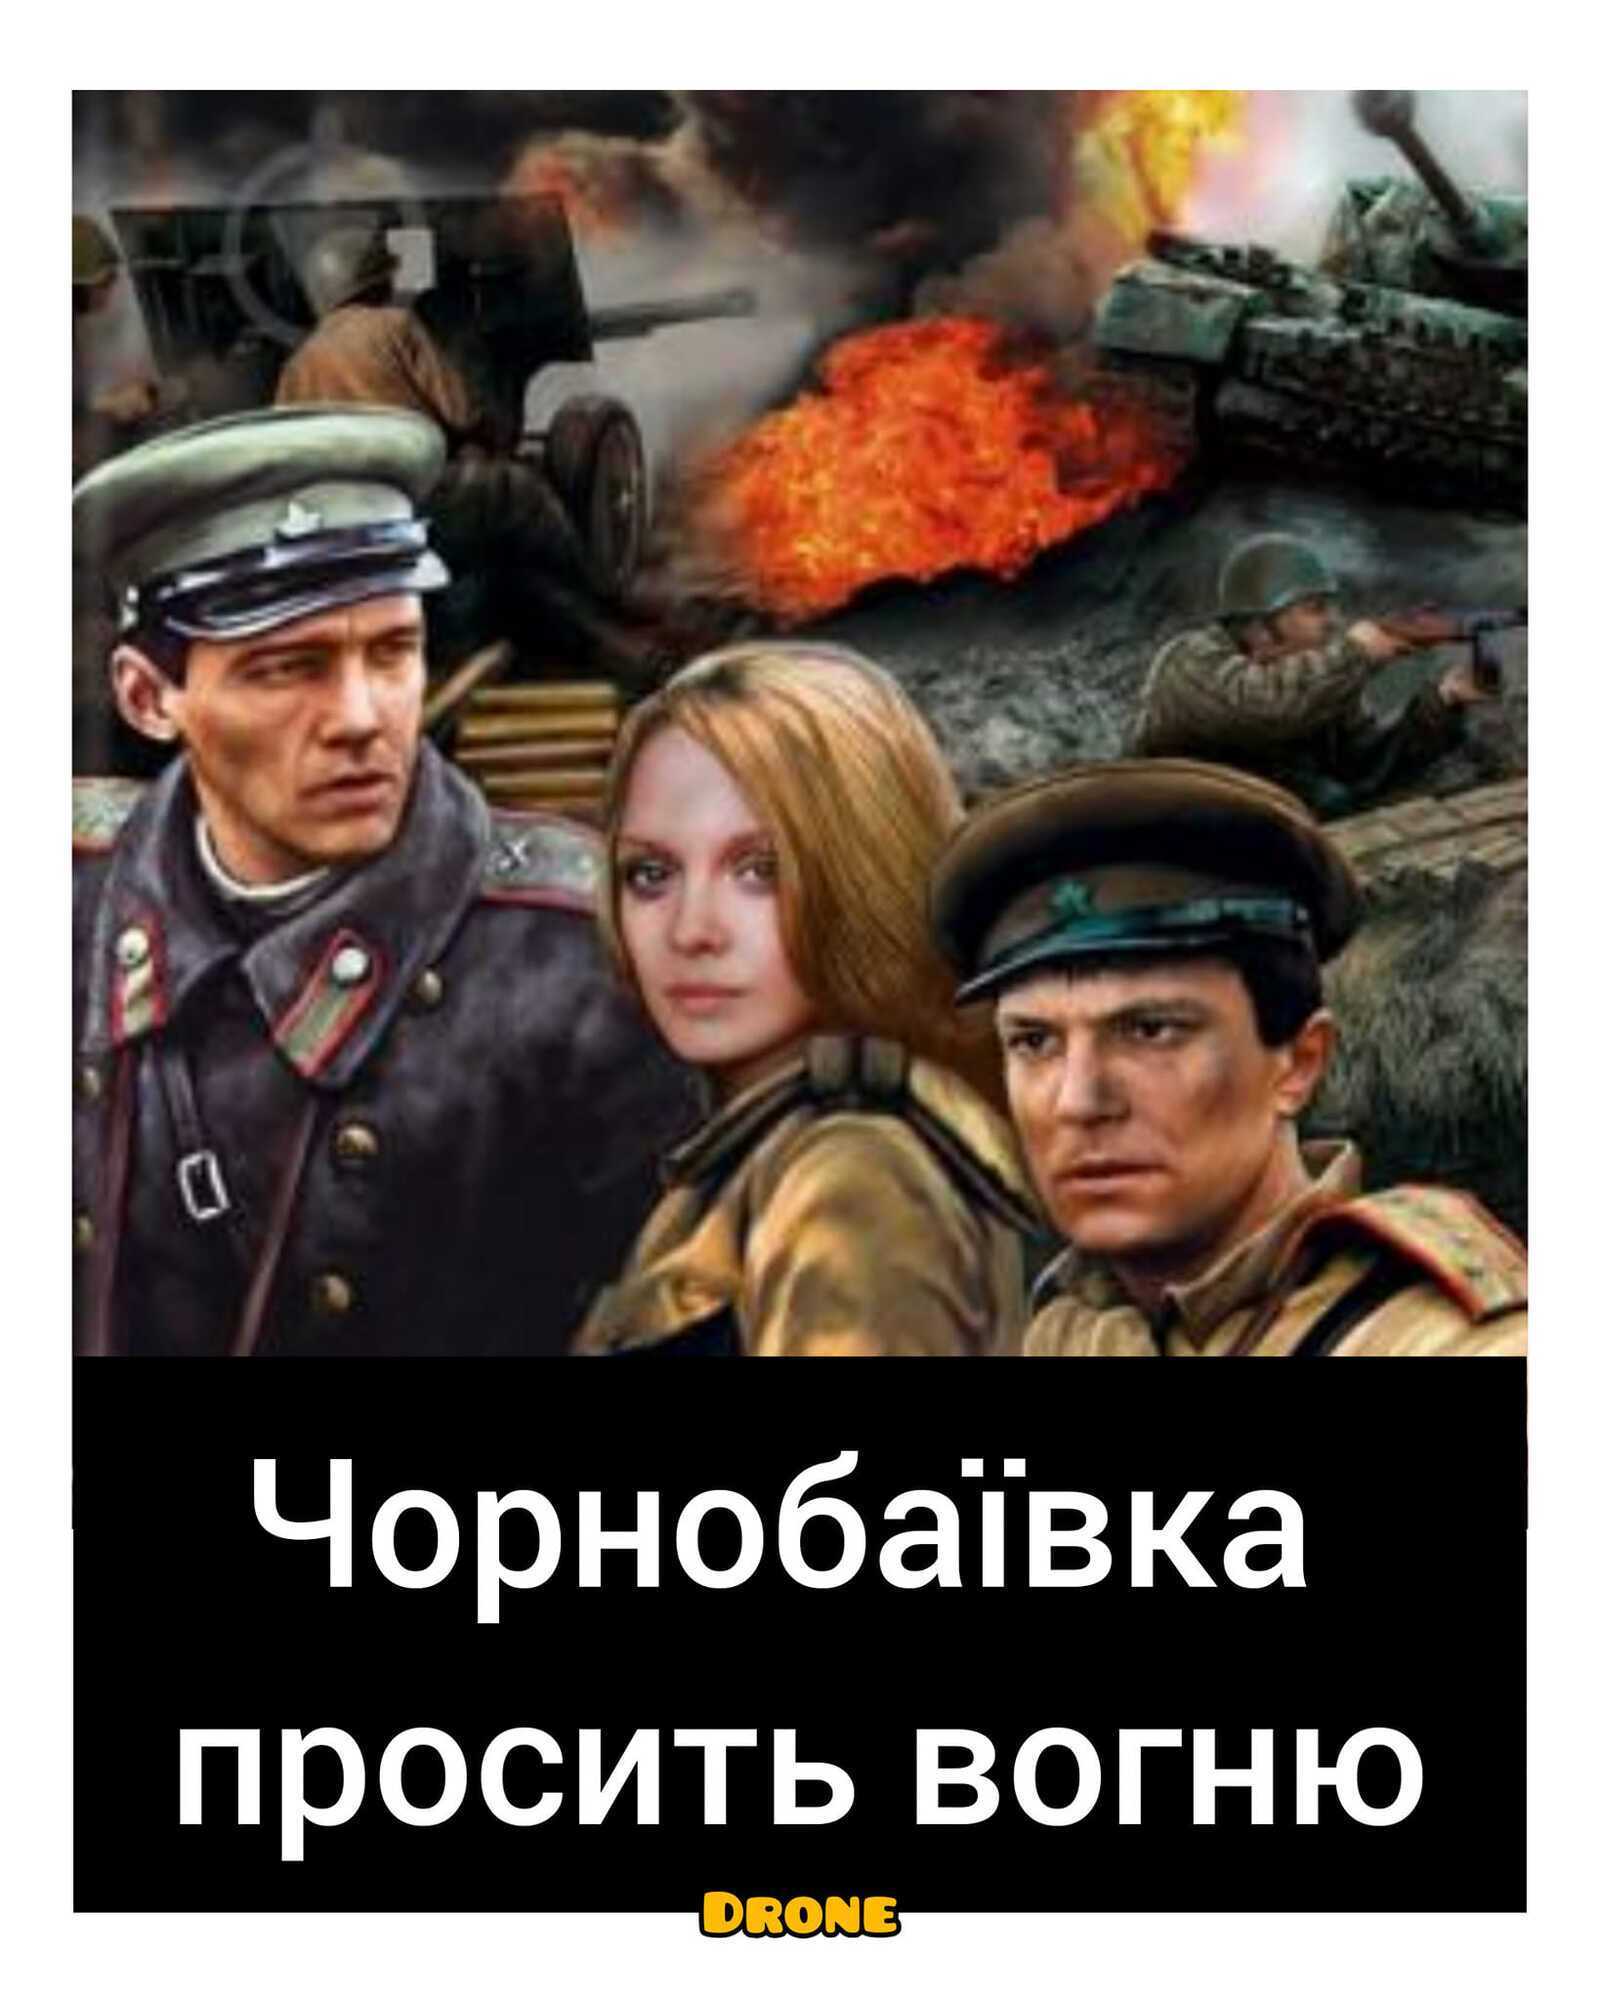 "Чернобаевка просит огня".